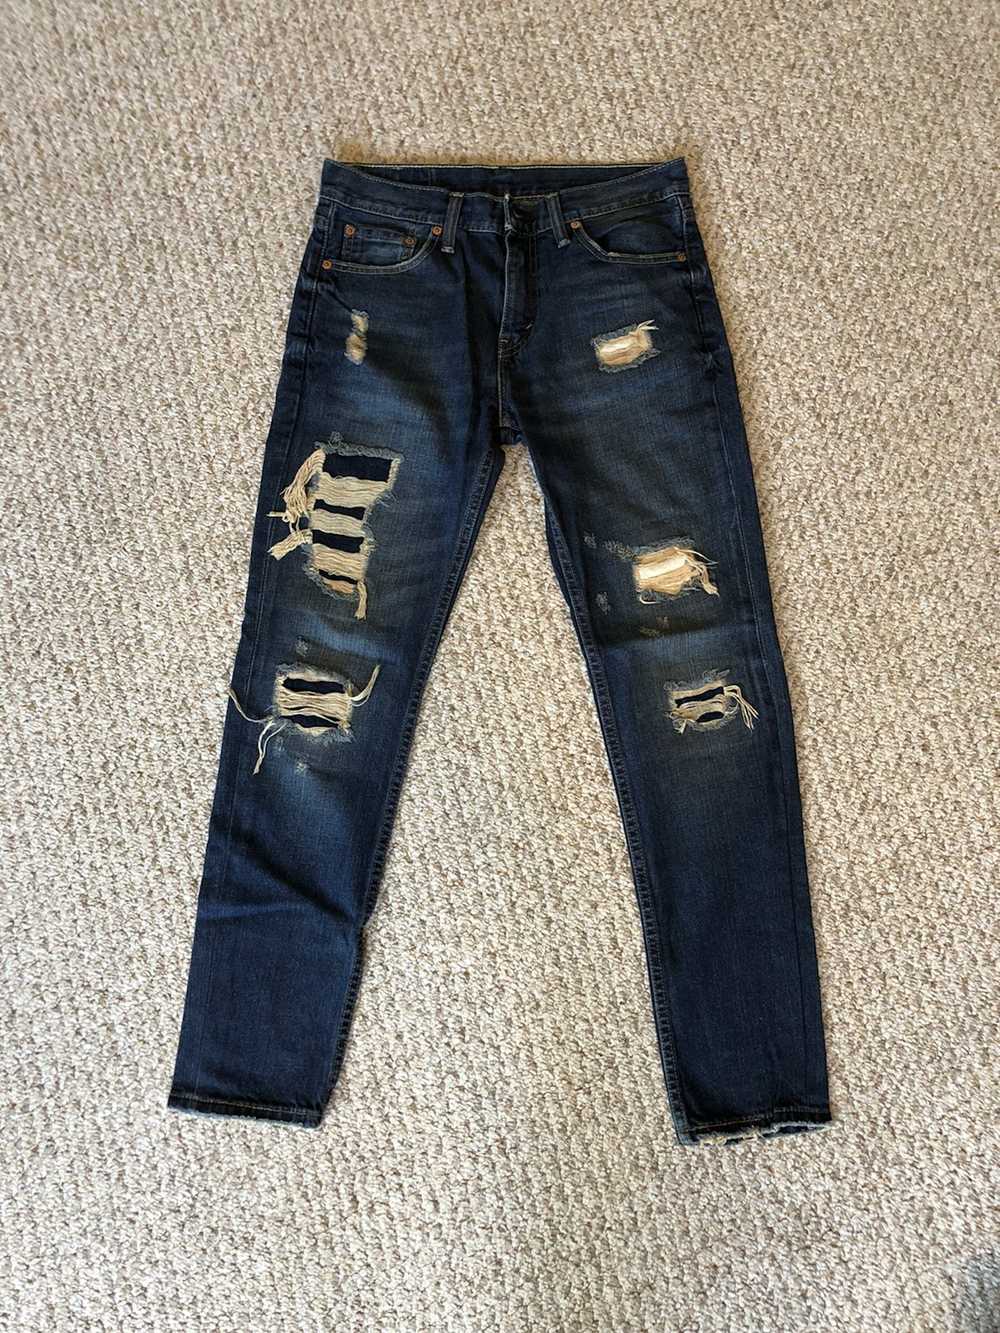 Levi's Levi's 511 Slim Fit Jeans - image 1